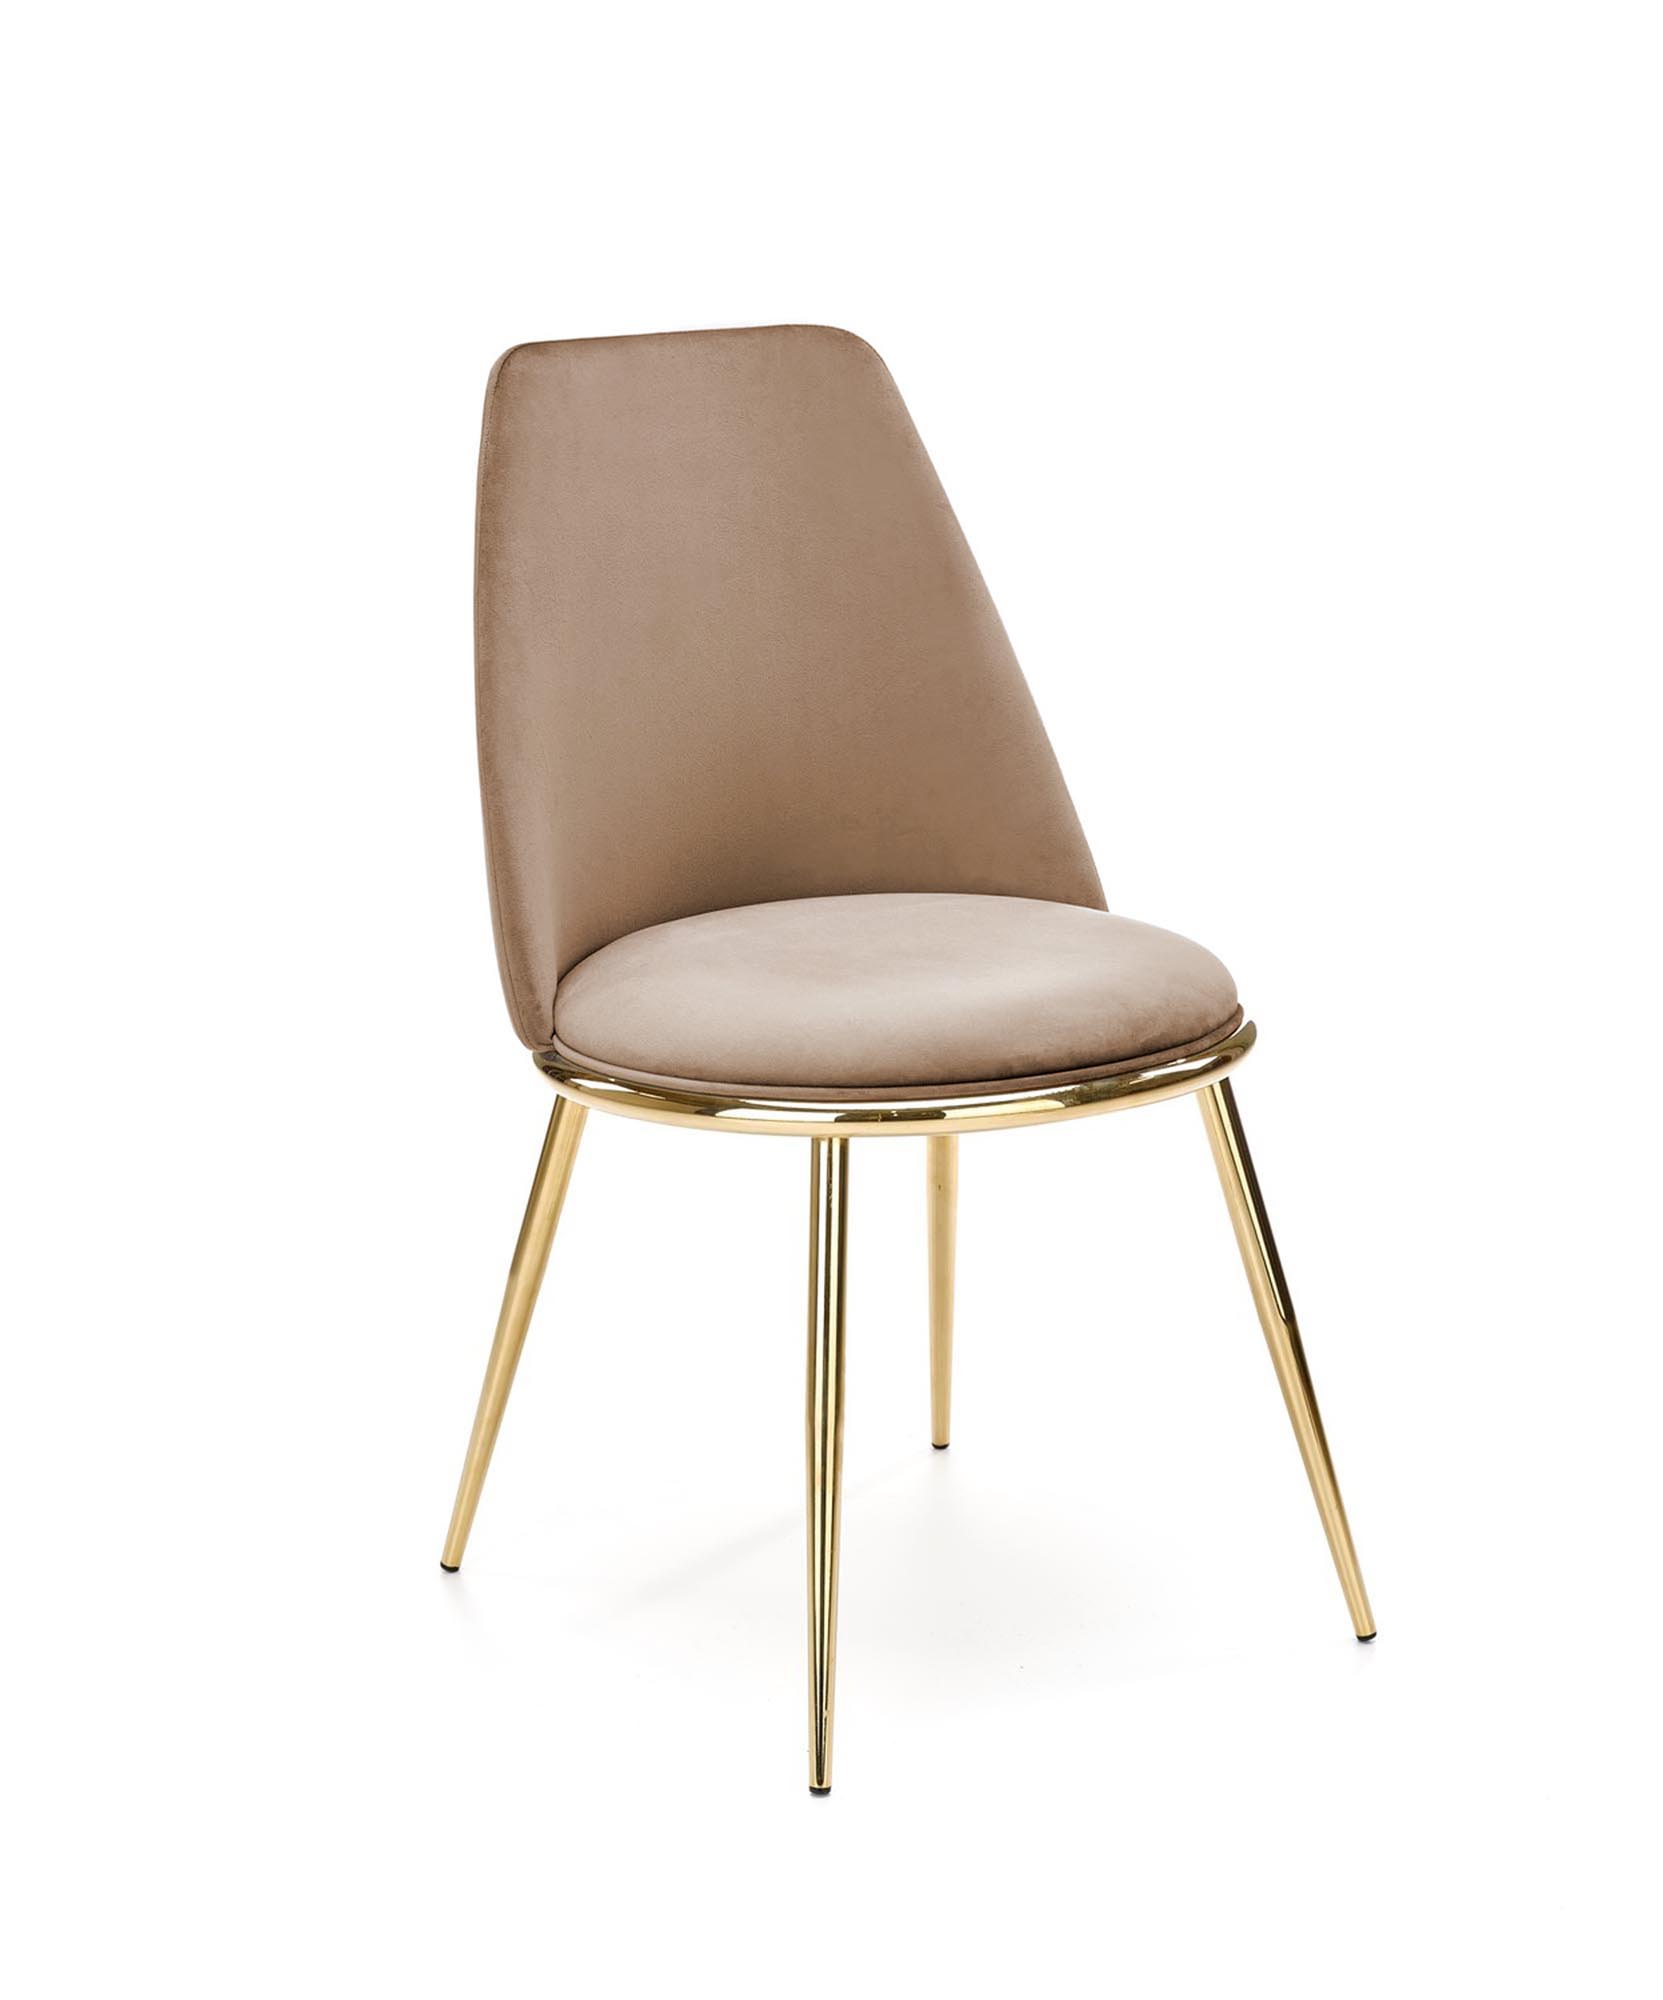 Scaun tapițat K460 - bej  krzesło tapicerowane k460 - beżowy / złoty